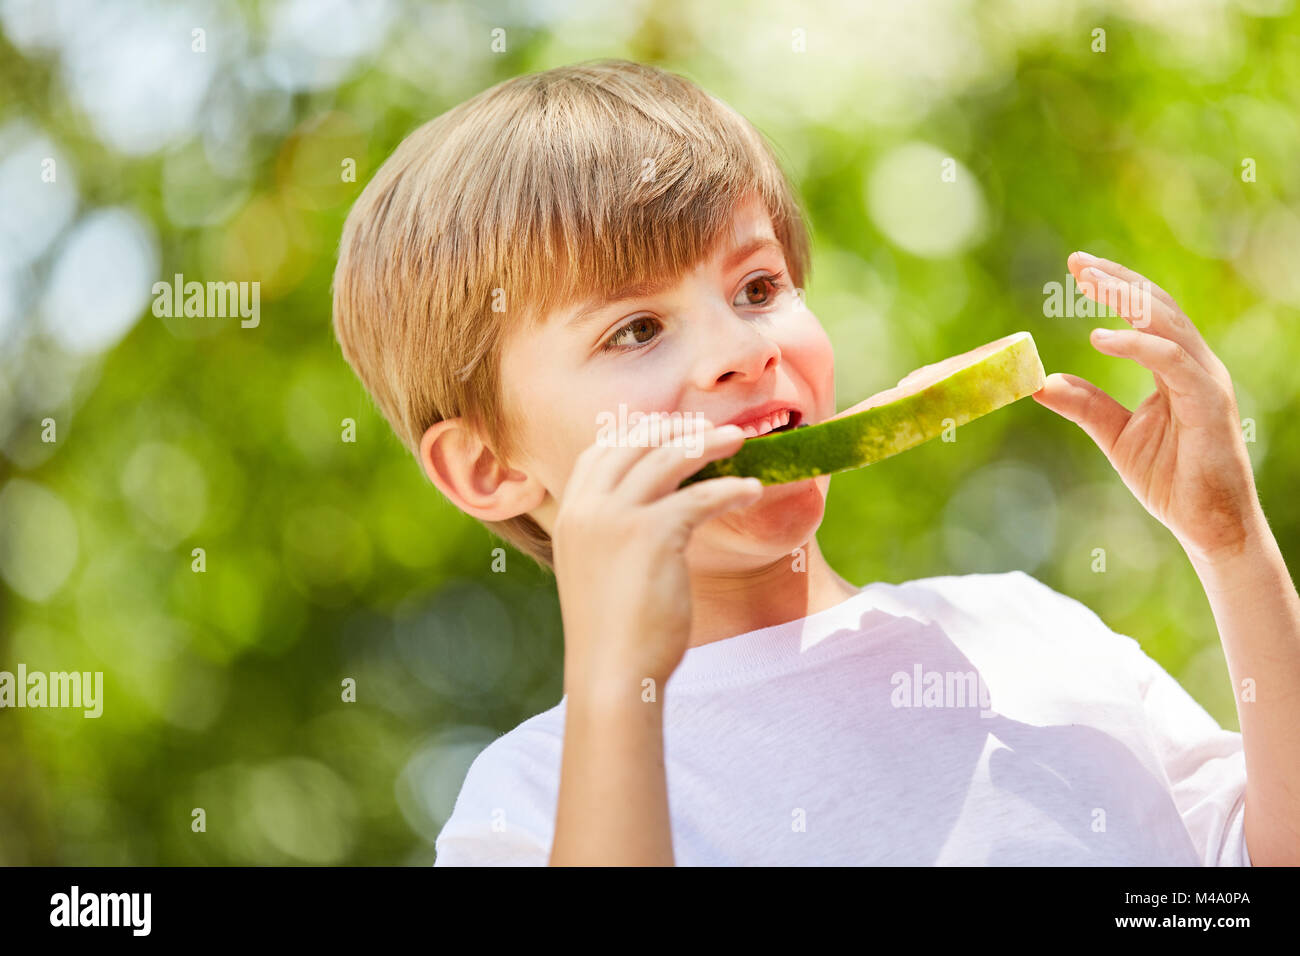 Garçon affamé mange une pastèque sain et délicieux en collation Banque D'Images